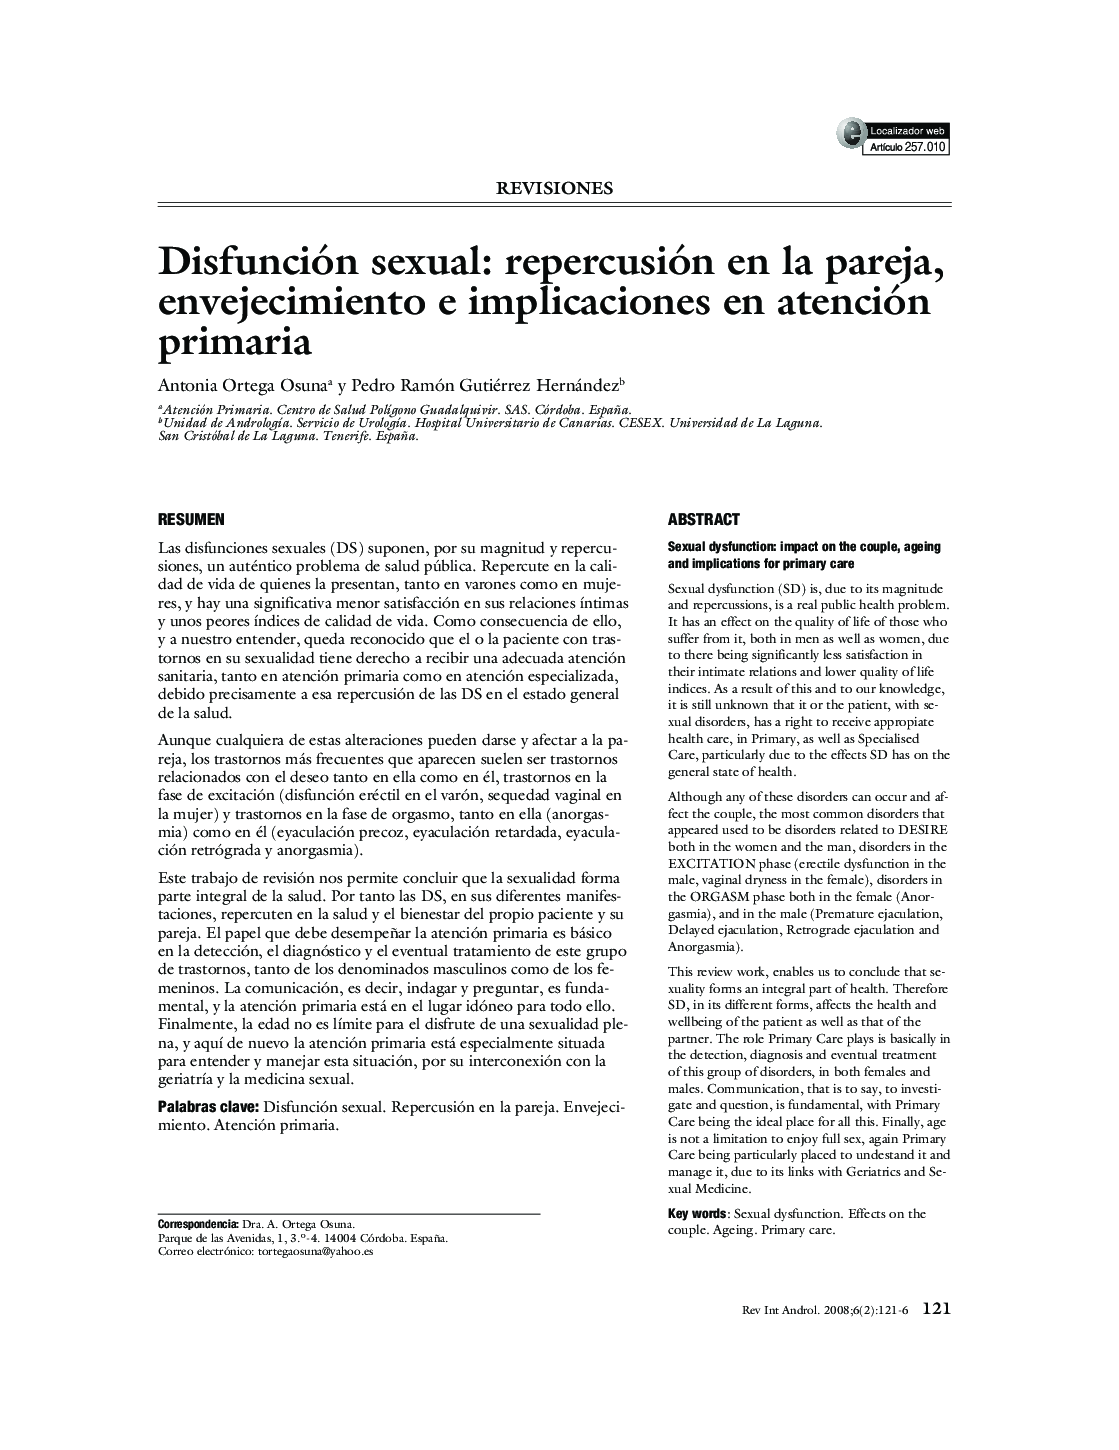 Disfunción sexual: repercusión en la pareja, envejecimiento e implicaciones en atención primaria